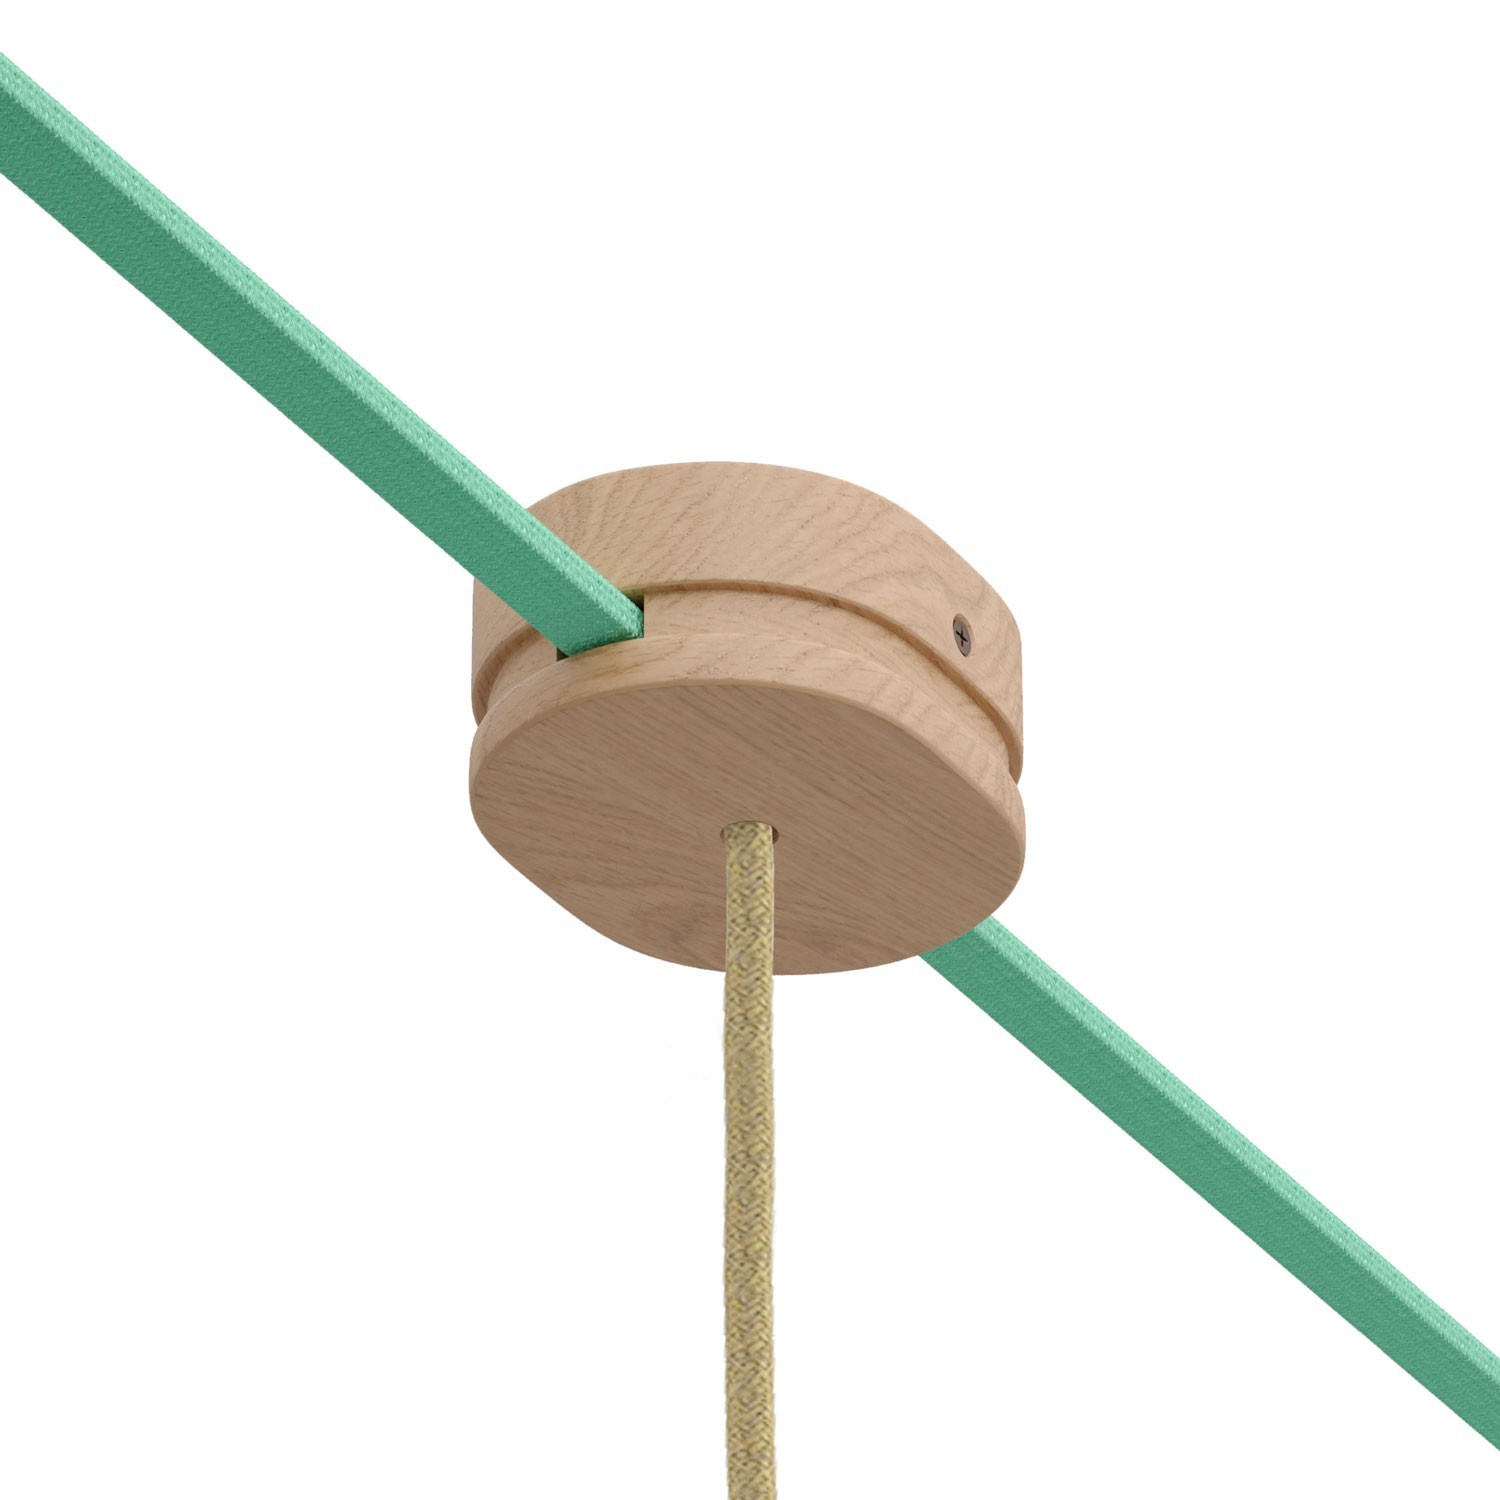 Rosone ovale in legno con un foro centrale e 2 fori laterali per cavo per catenaria e sistema Filé. Made in Italy